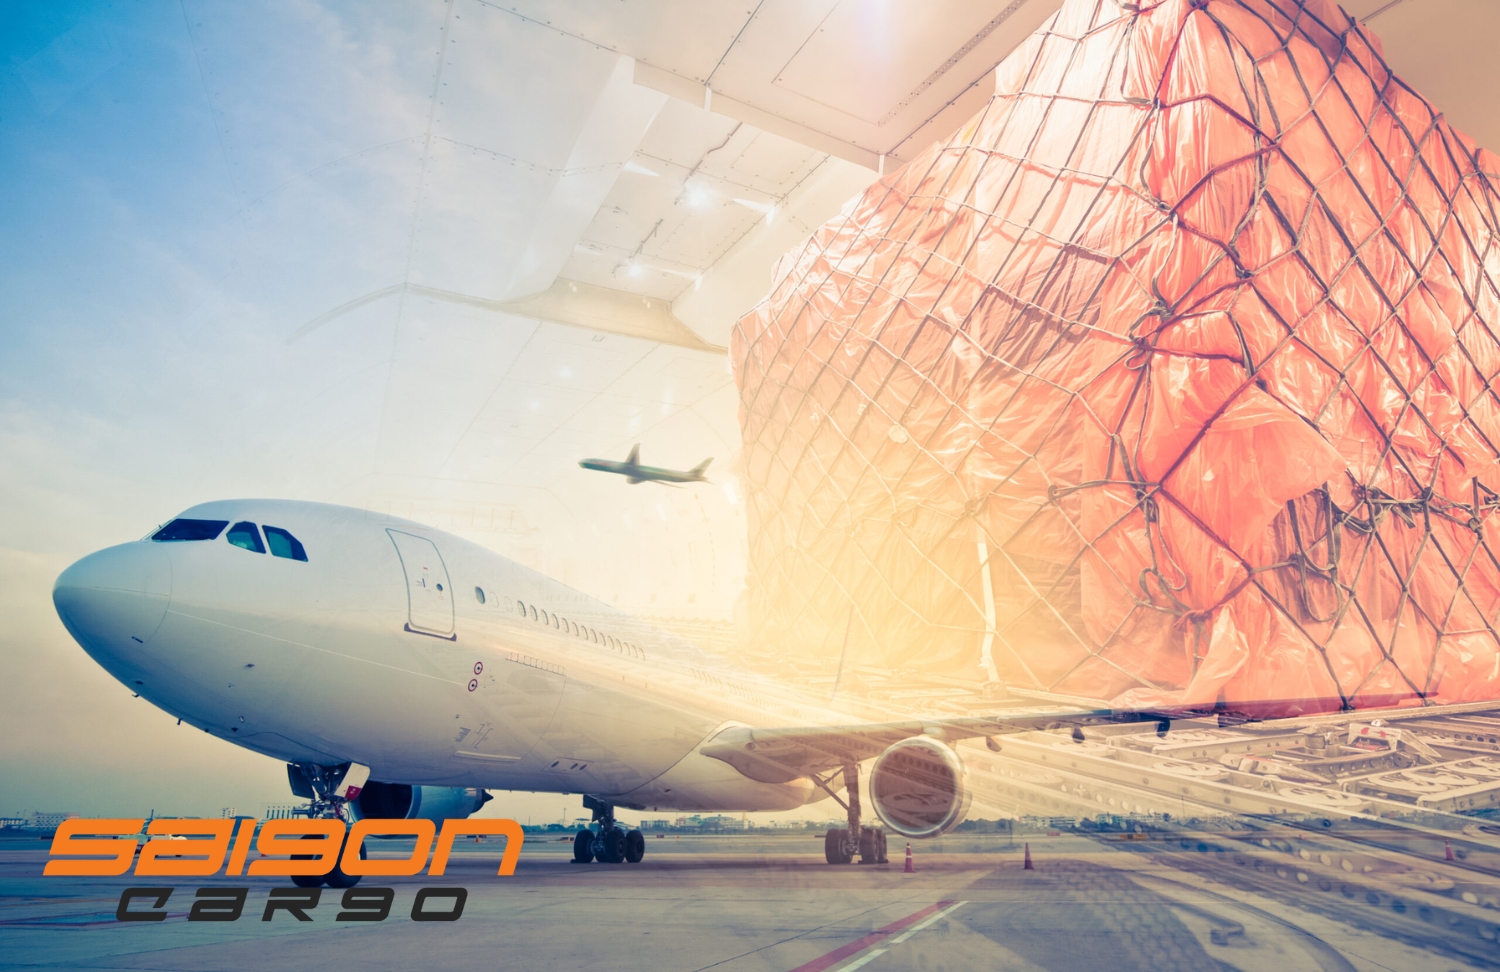 An toàn trong vận chuyển hàng hóa: Quy trình kiểm tra an toàn hàng hóa tại sân bay